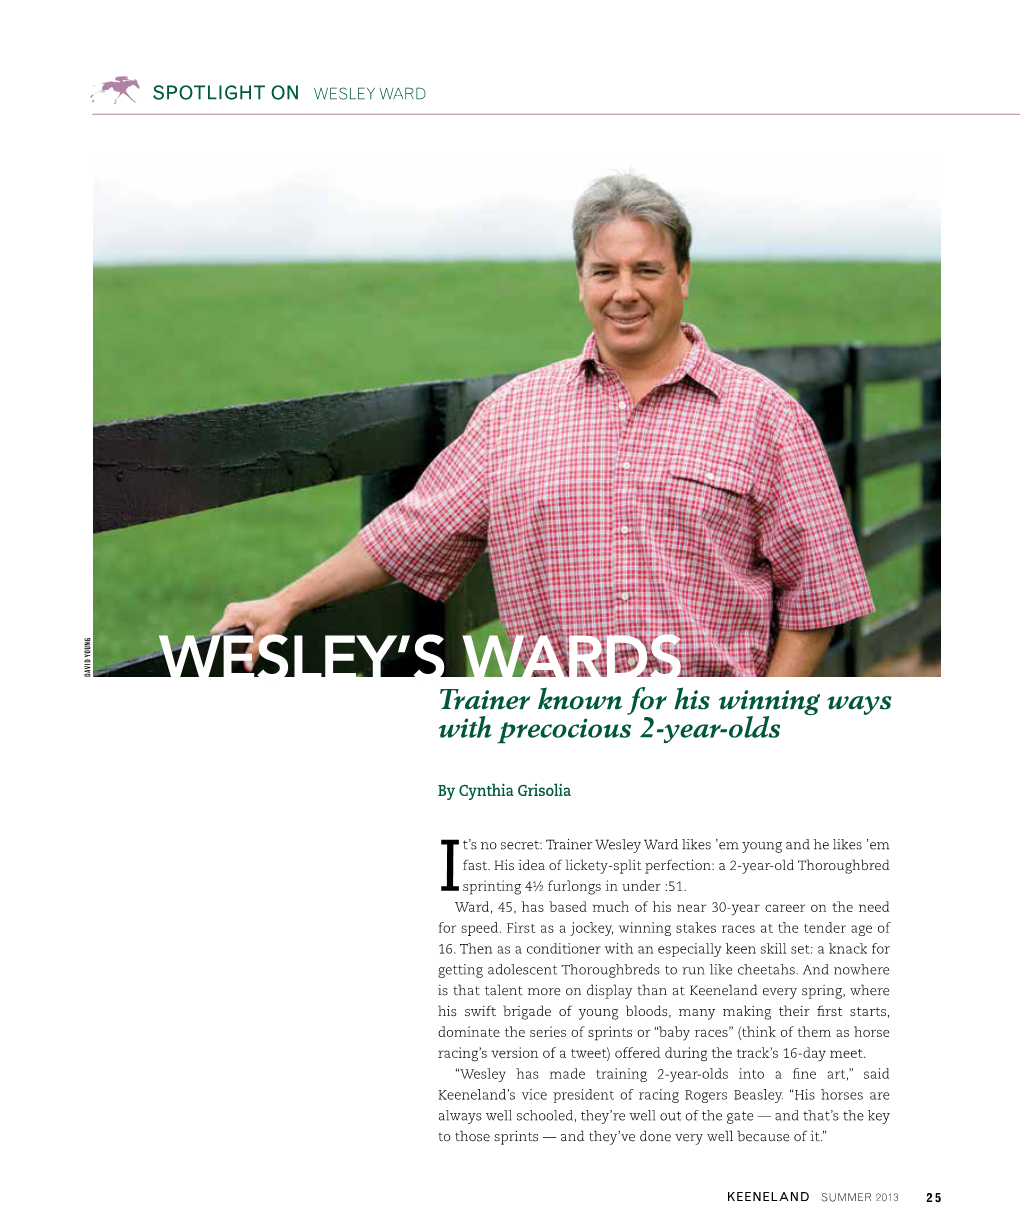 Wesley's Wards